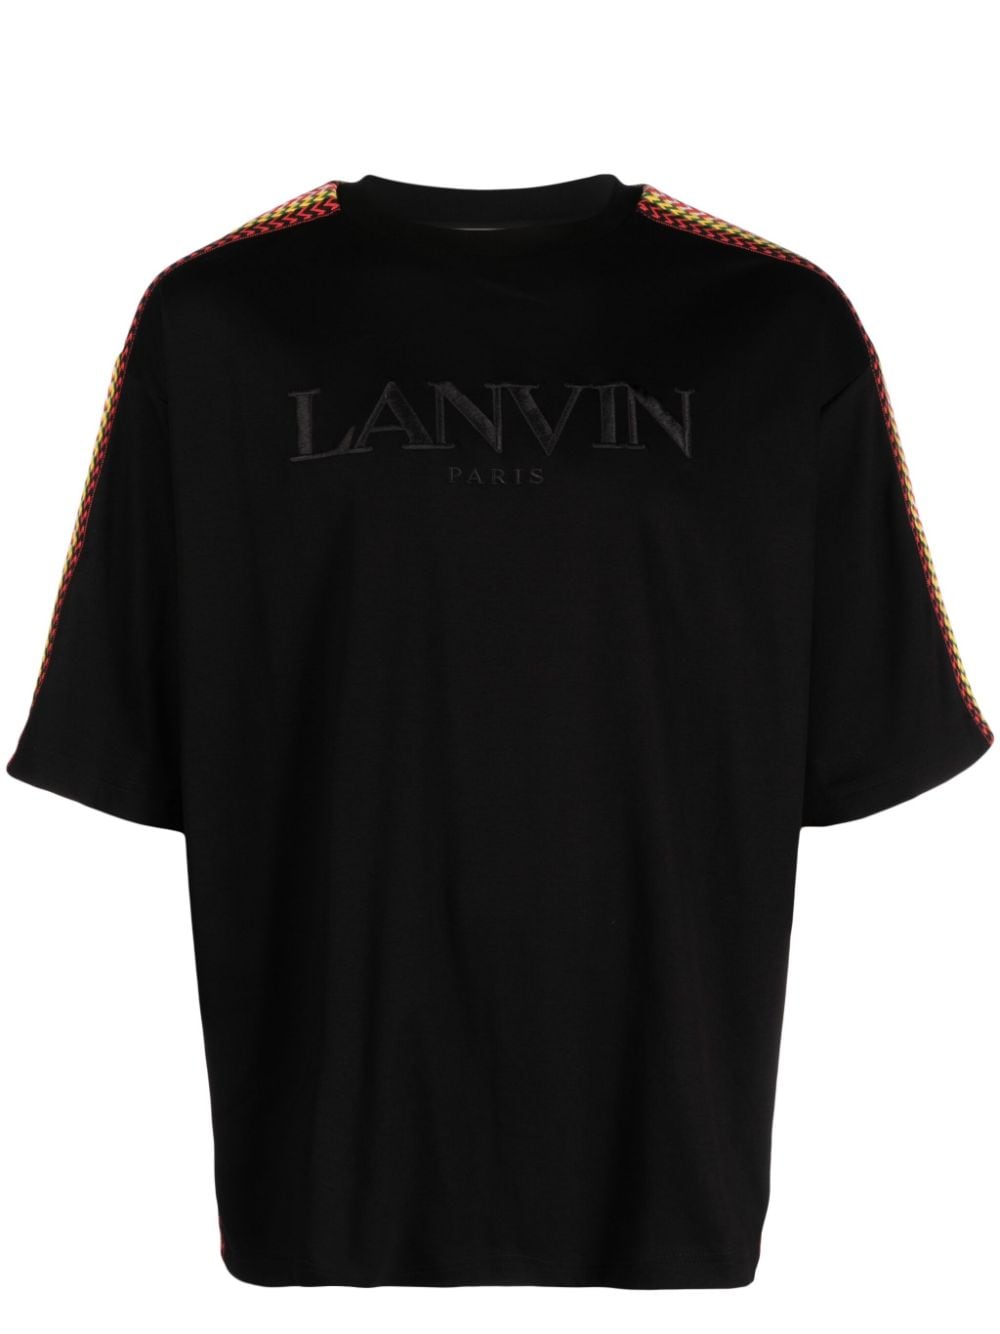 Lanvin Curb T-Shirt - Schwarz von Lanvin